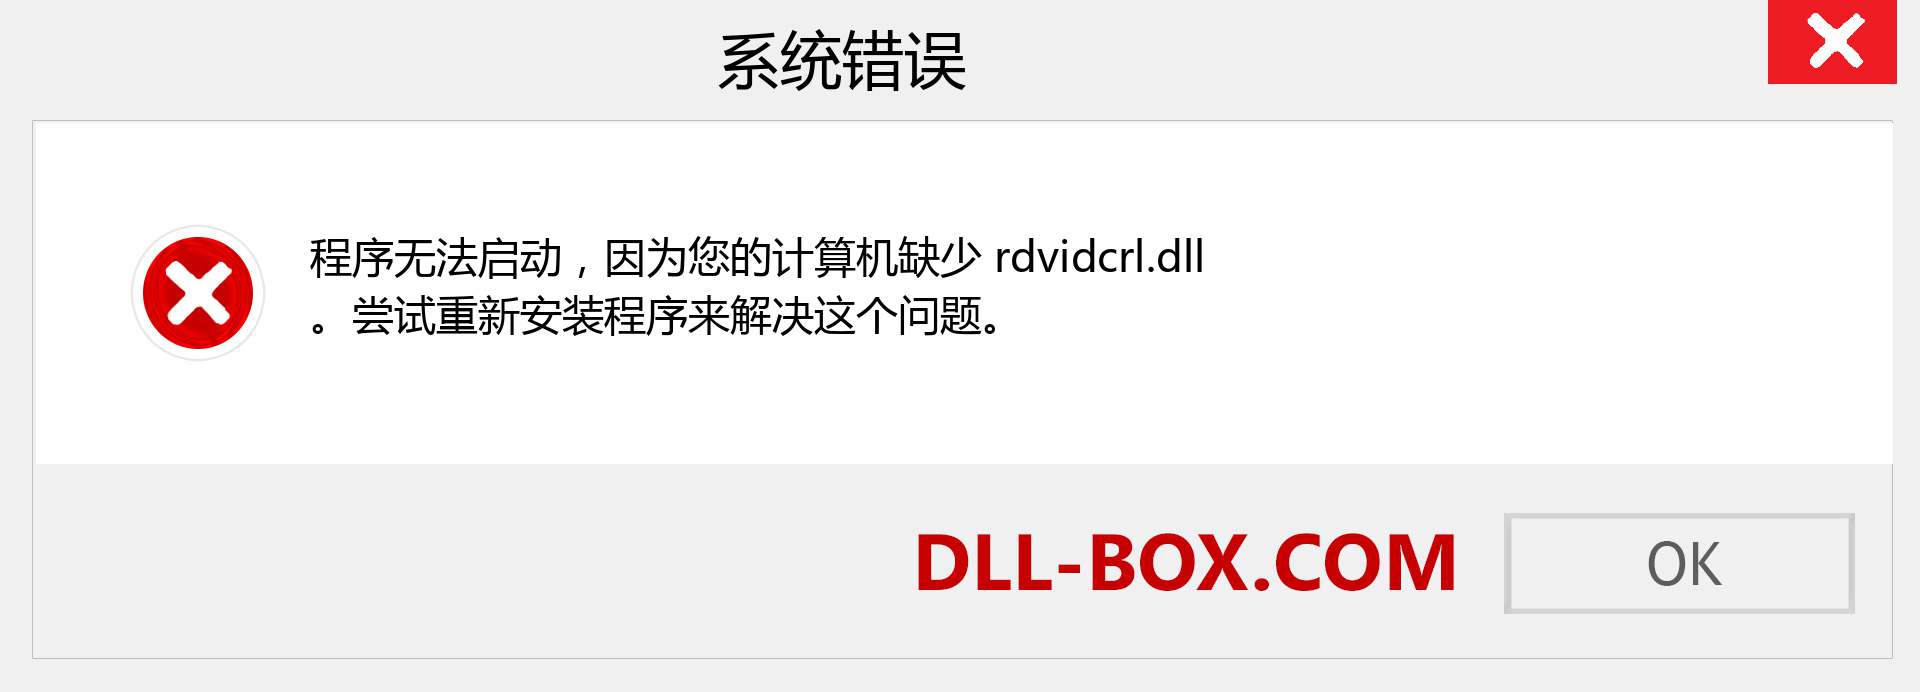 rdvidcrl.dll 文件丢失？。 适用于 Windows 7、8、10 的下载 - 修复 Windows、照片、图像上的 rdvidcrl dll 丢失错误